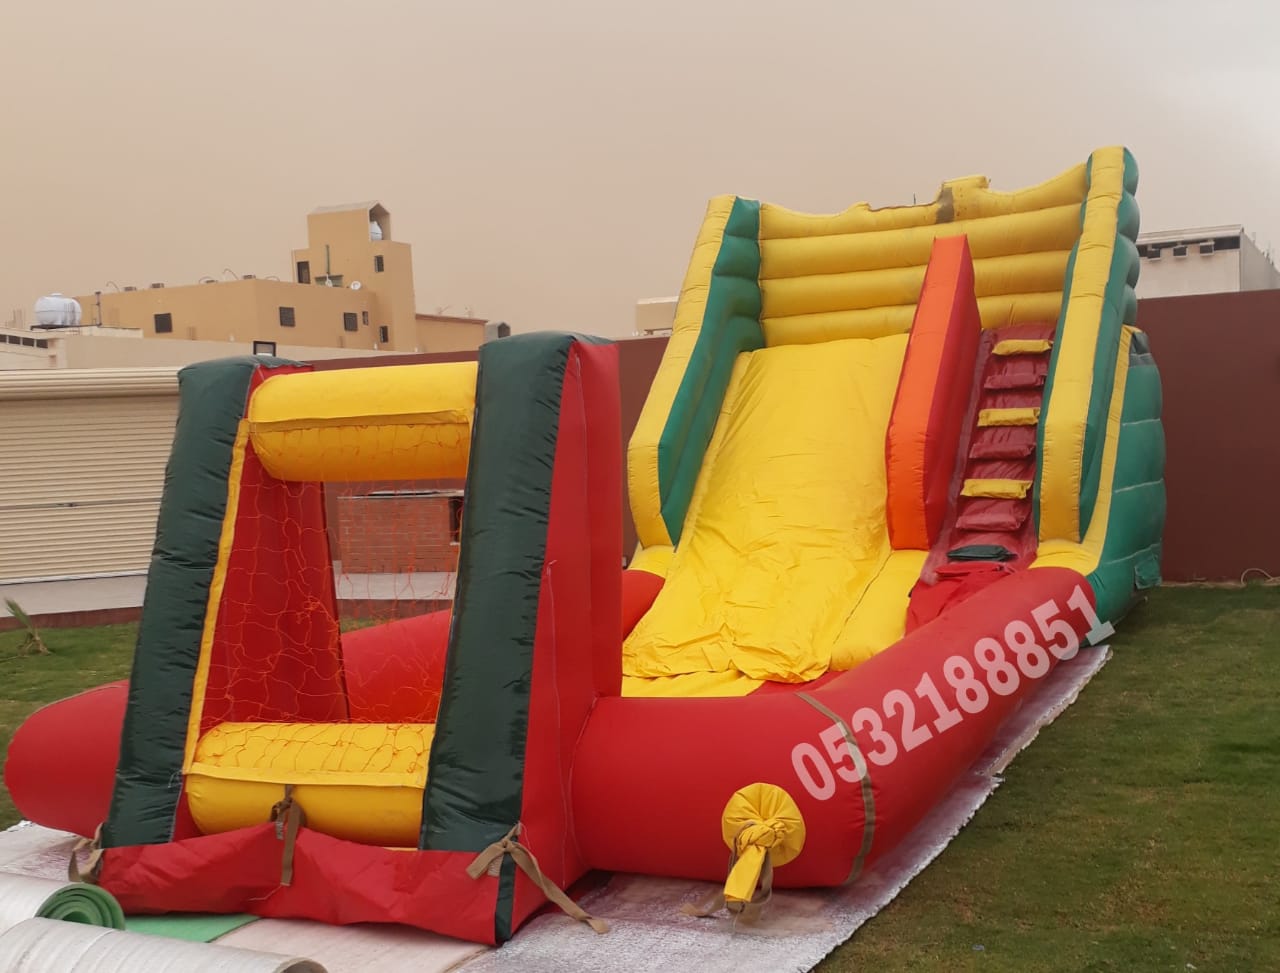 مؤسسة الحربي لتأجير الألعاب الهوائية في الرياض وجدة 0532188851 نطيطات وملاعب صابونية في جدة والرياض  P_127055lll0